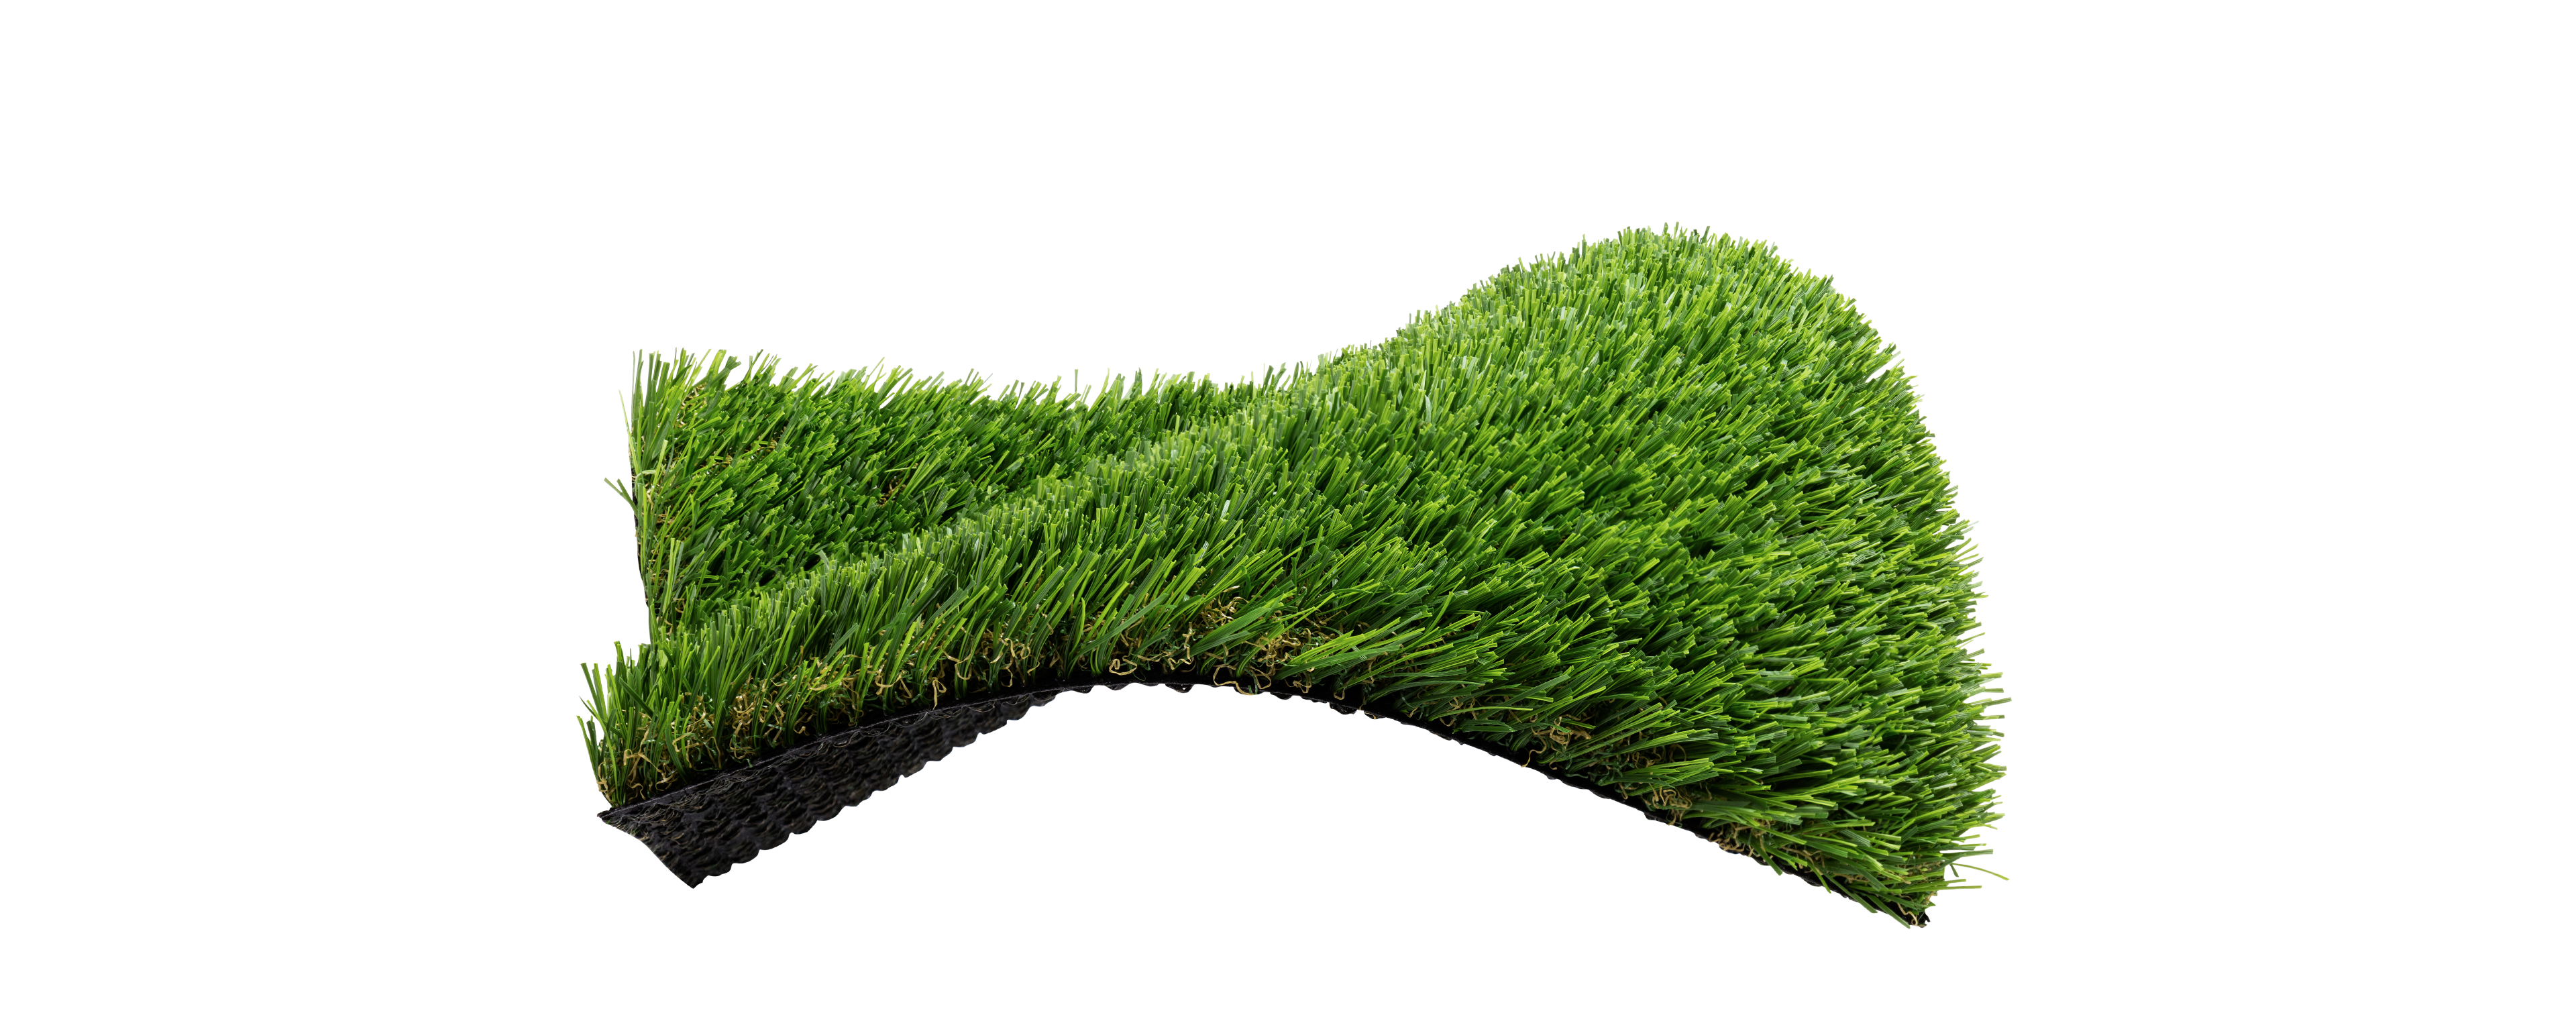 صورة مصطنعة مزيفة العشب الأخضر PNG HD